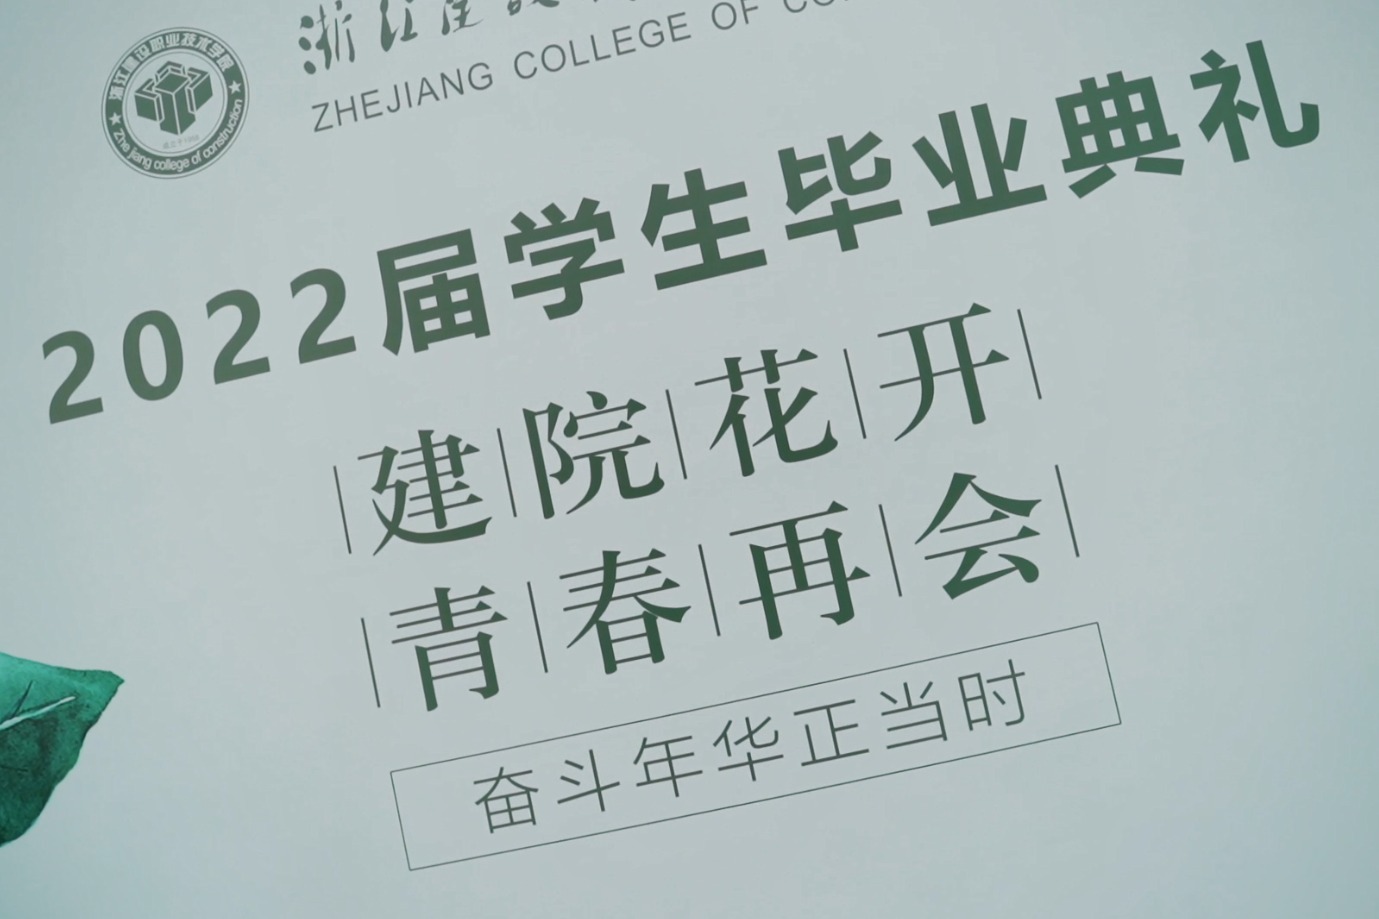 奋斗正当时 浙江建设职业技术学院2022届学生毕业典礼